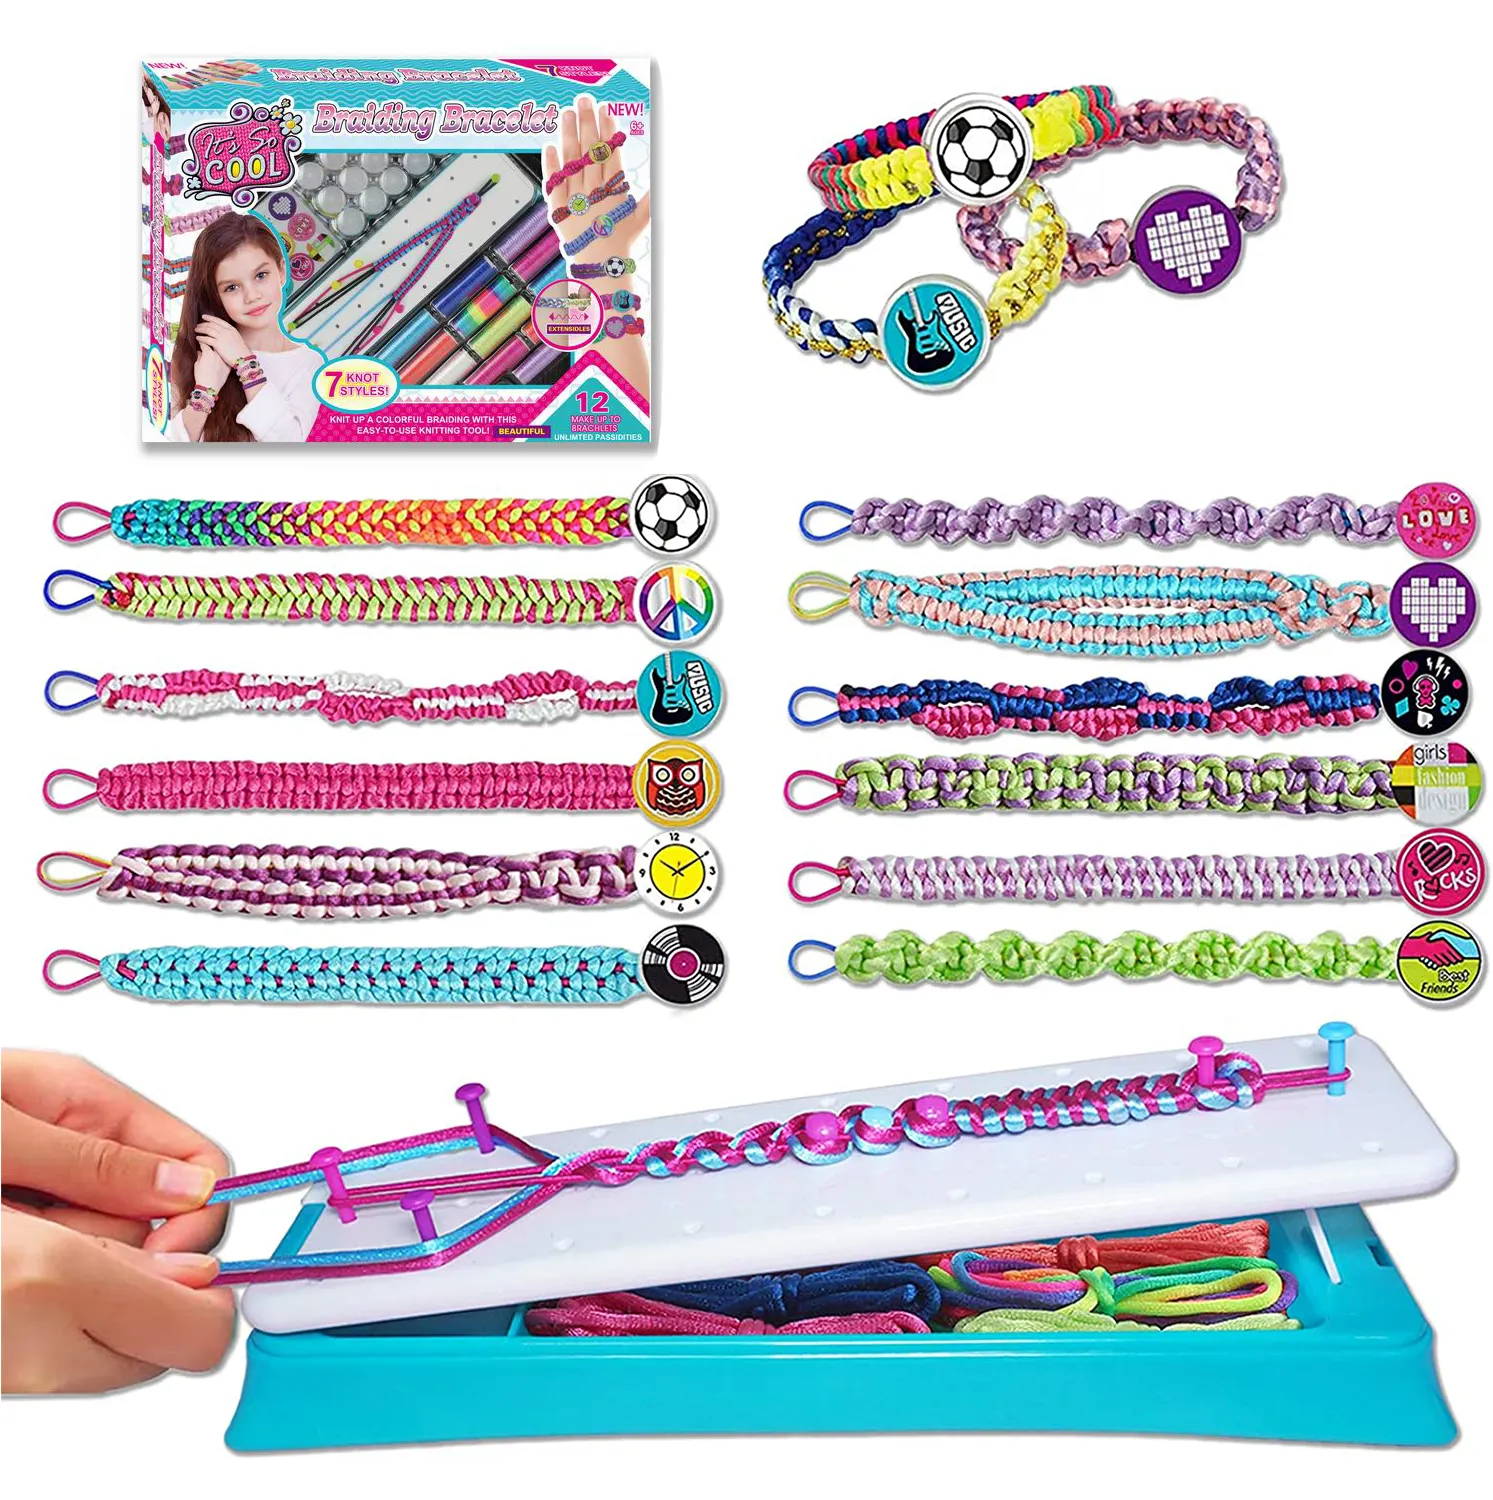 Kit de fabrication de bracelets pour filles, bricolage de bijoux, Kits artisanaux pour enfants de 3 à 10 ans, jouets pour filles, cadeau d'anniversaire ou de noël niche